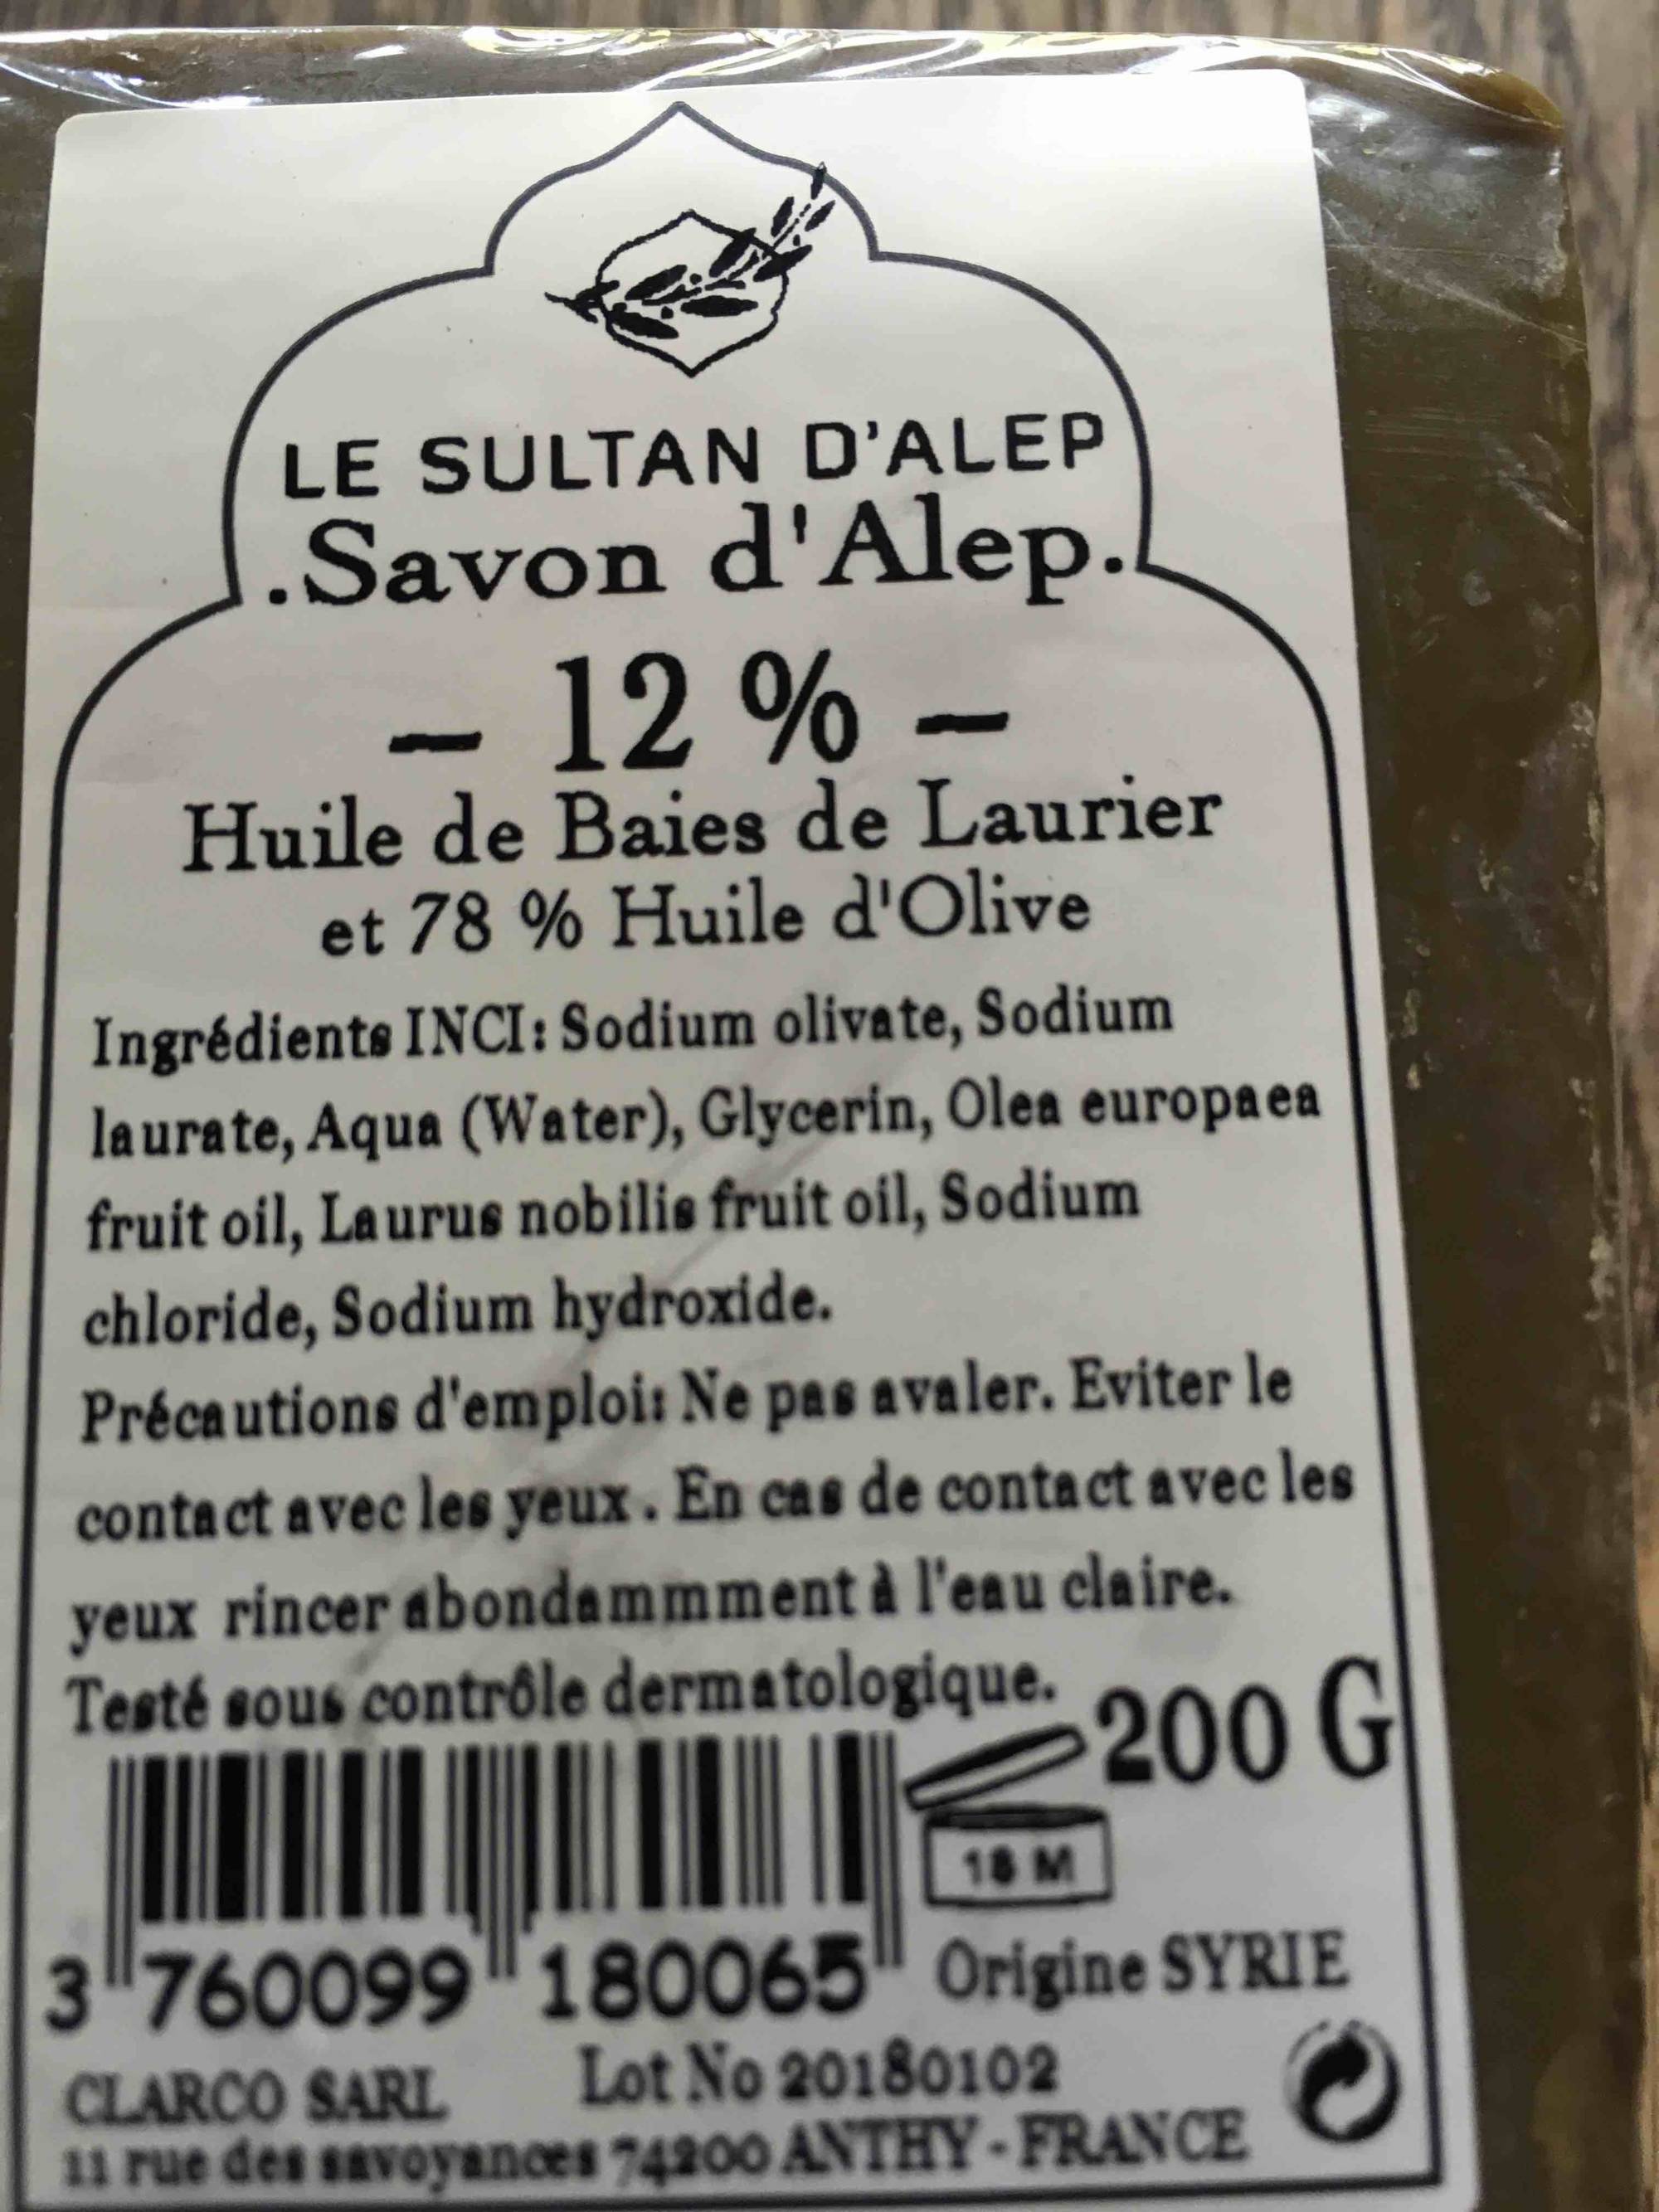 LE SULTAN D'ALEP - Savon d'Alep - Huile de baies de Laurier et huile d'olive